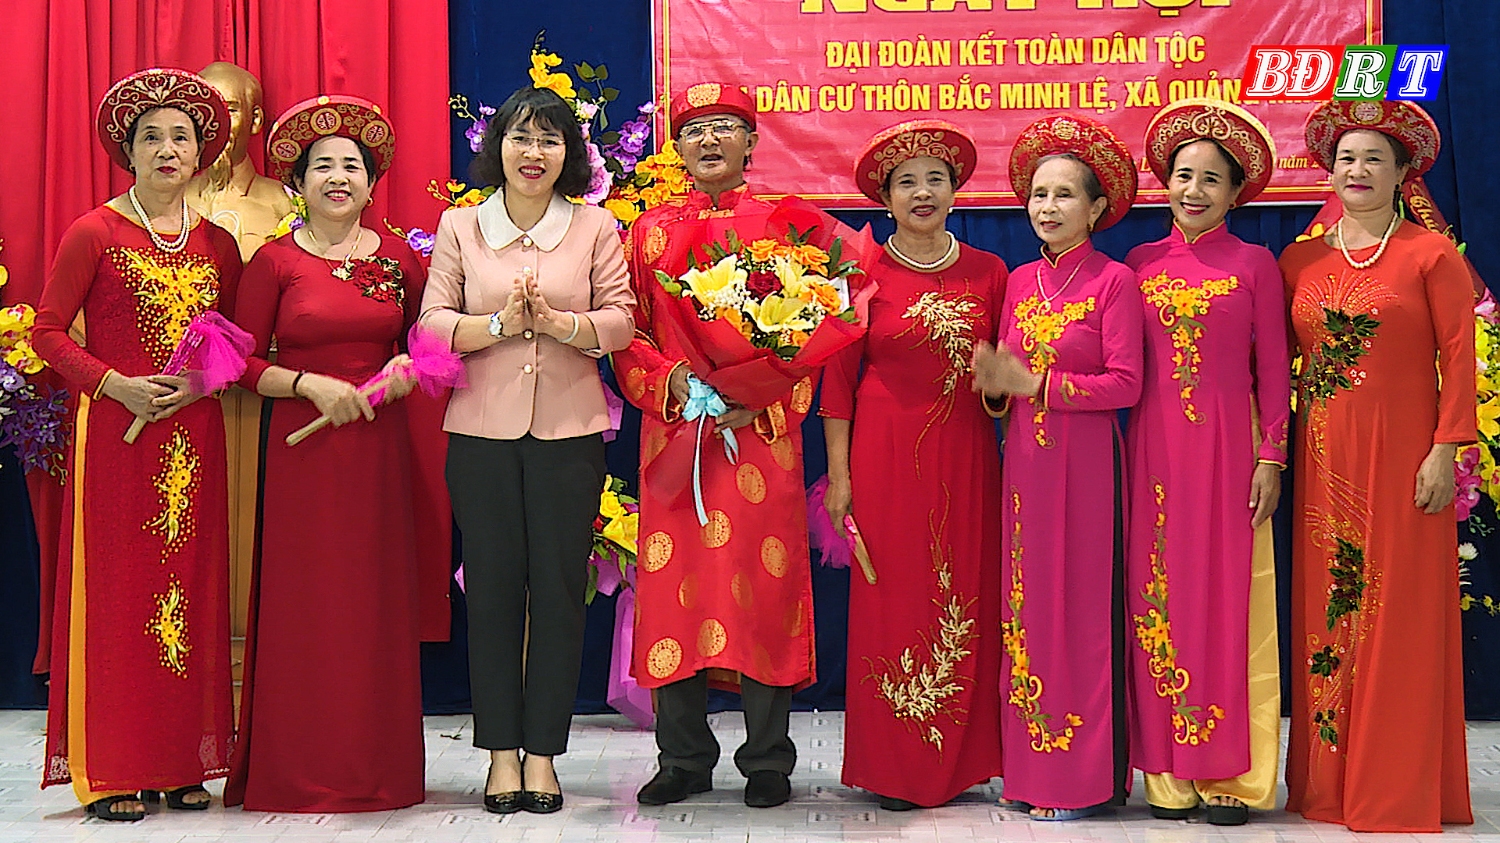 Đồng chí Giám đốc Sở Văn hóa - Thể thao tỉnh Quảng Bình thăm và tặng quà Câu lạc bộ Ca trù xã Quảng Minh